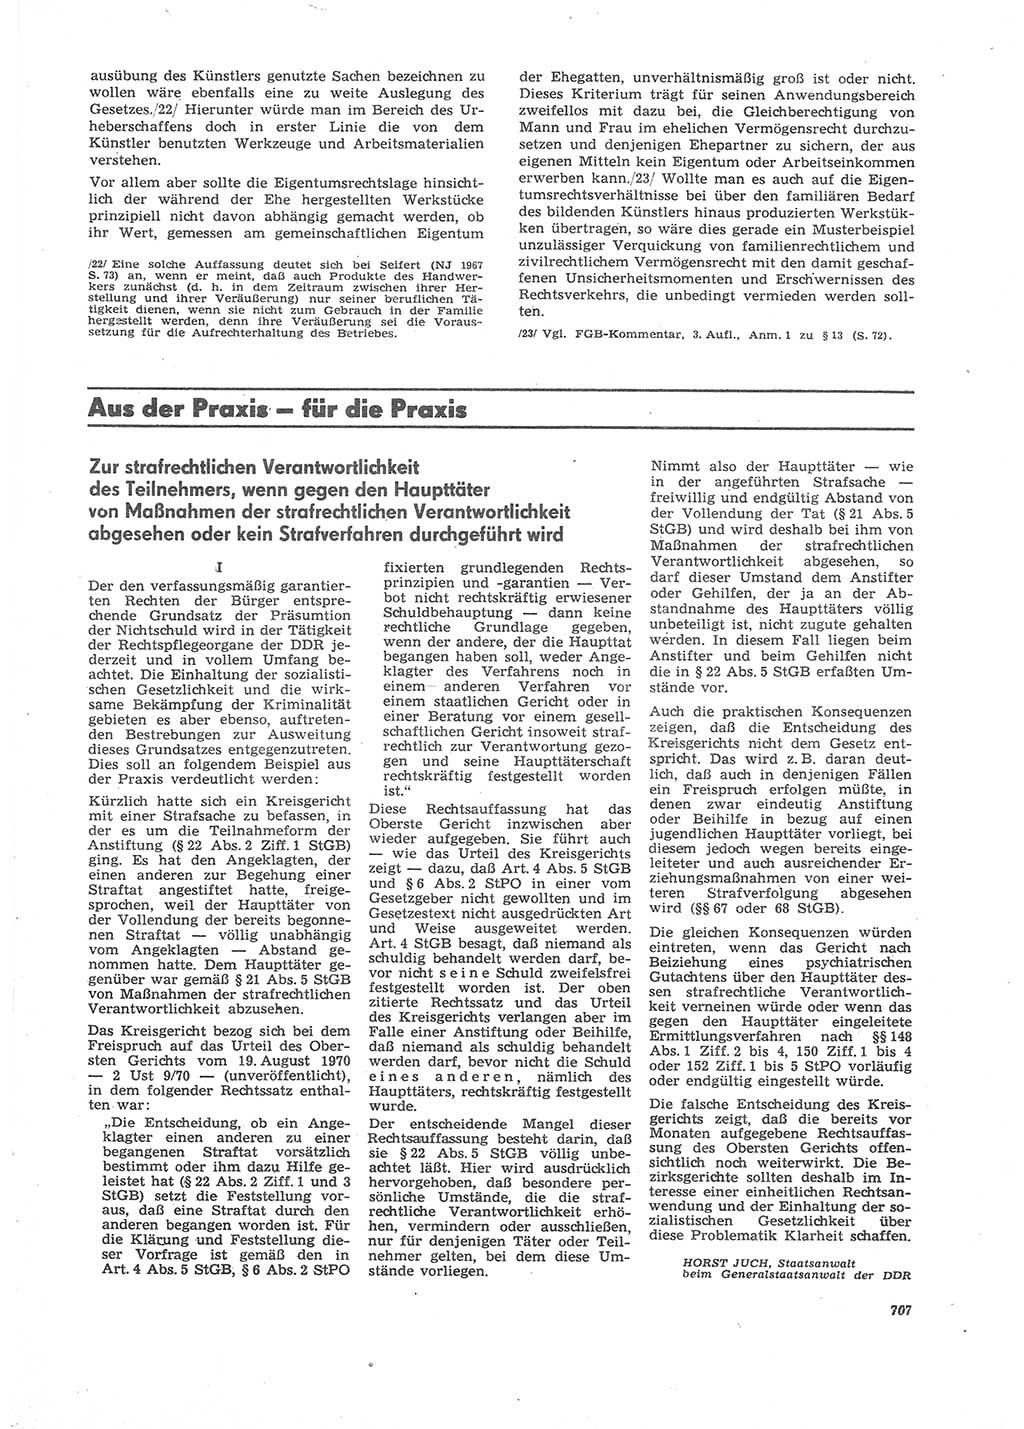 Neue Justiz (NJ), Zeitschrift für Recht und Rechtswissenschaft [Deutsche Demokratische Republik (DDR)], 26. Jahrgang 1972, Seite 707 (NJ DDR 1972, S. 707)